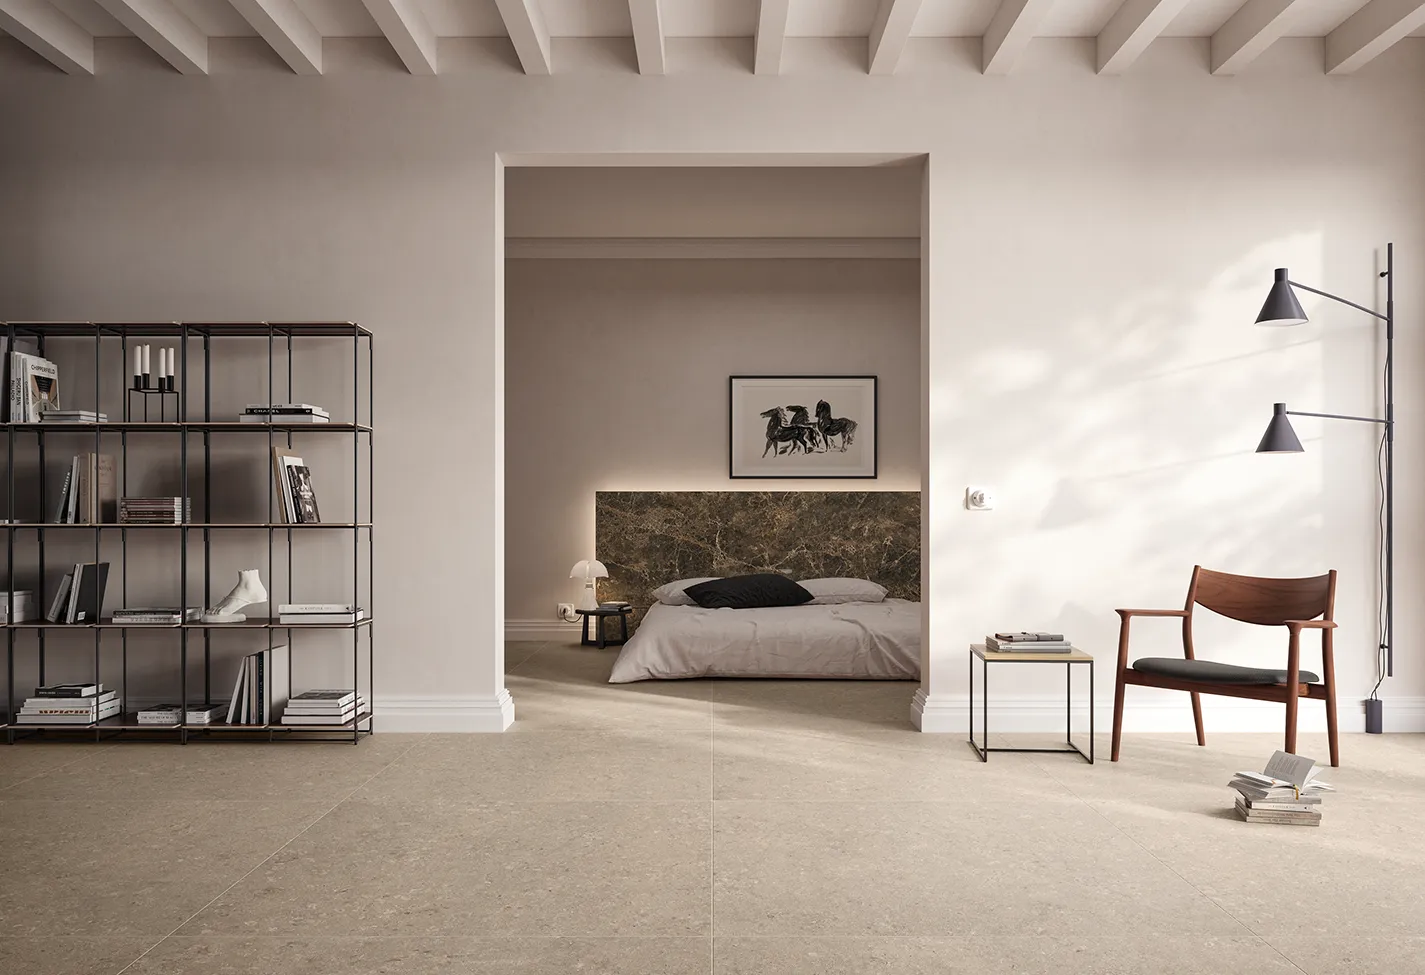 Просторный минималистичный интерьер с полом из бежевого керамогранита, современной металлической книжной полкой, видом на изящную спальню и дизайнерской мебелью.